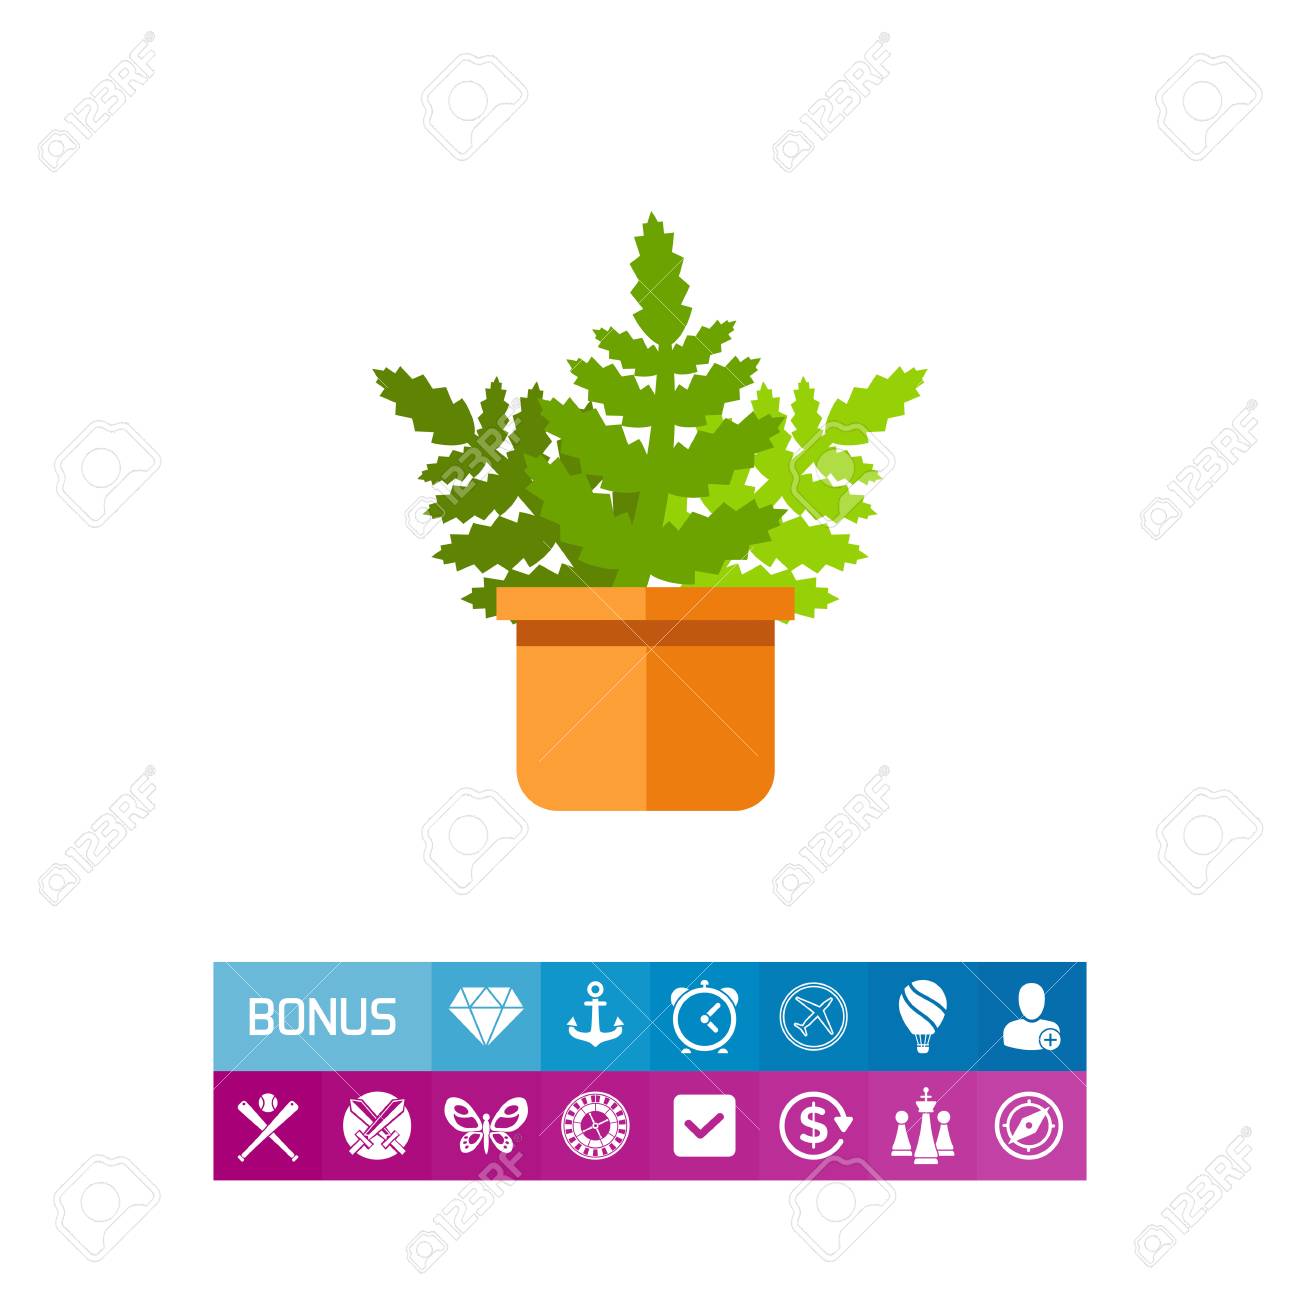 Palm leaf, fern leaf, leaf icon with long shadow, flat design 